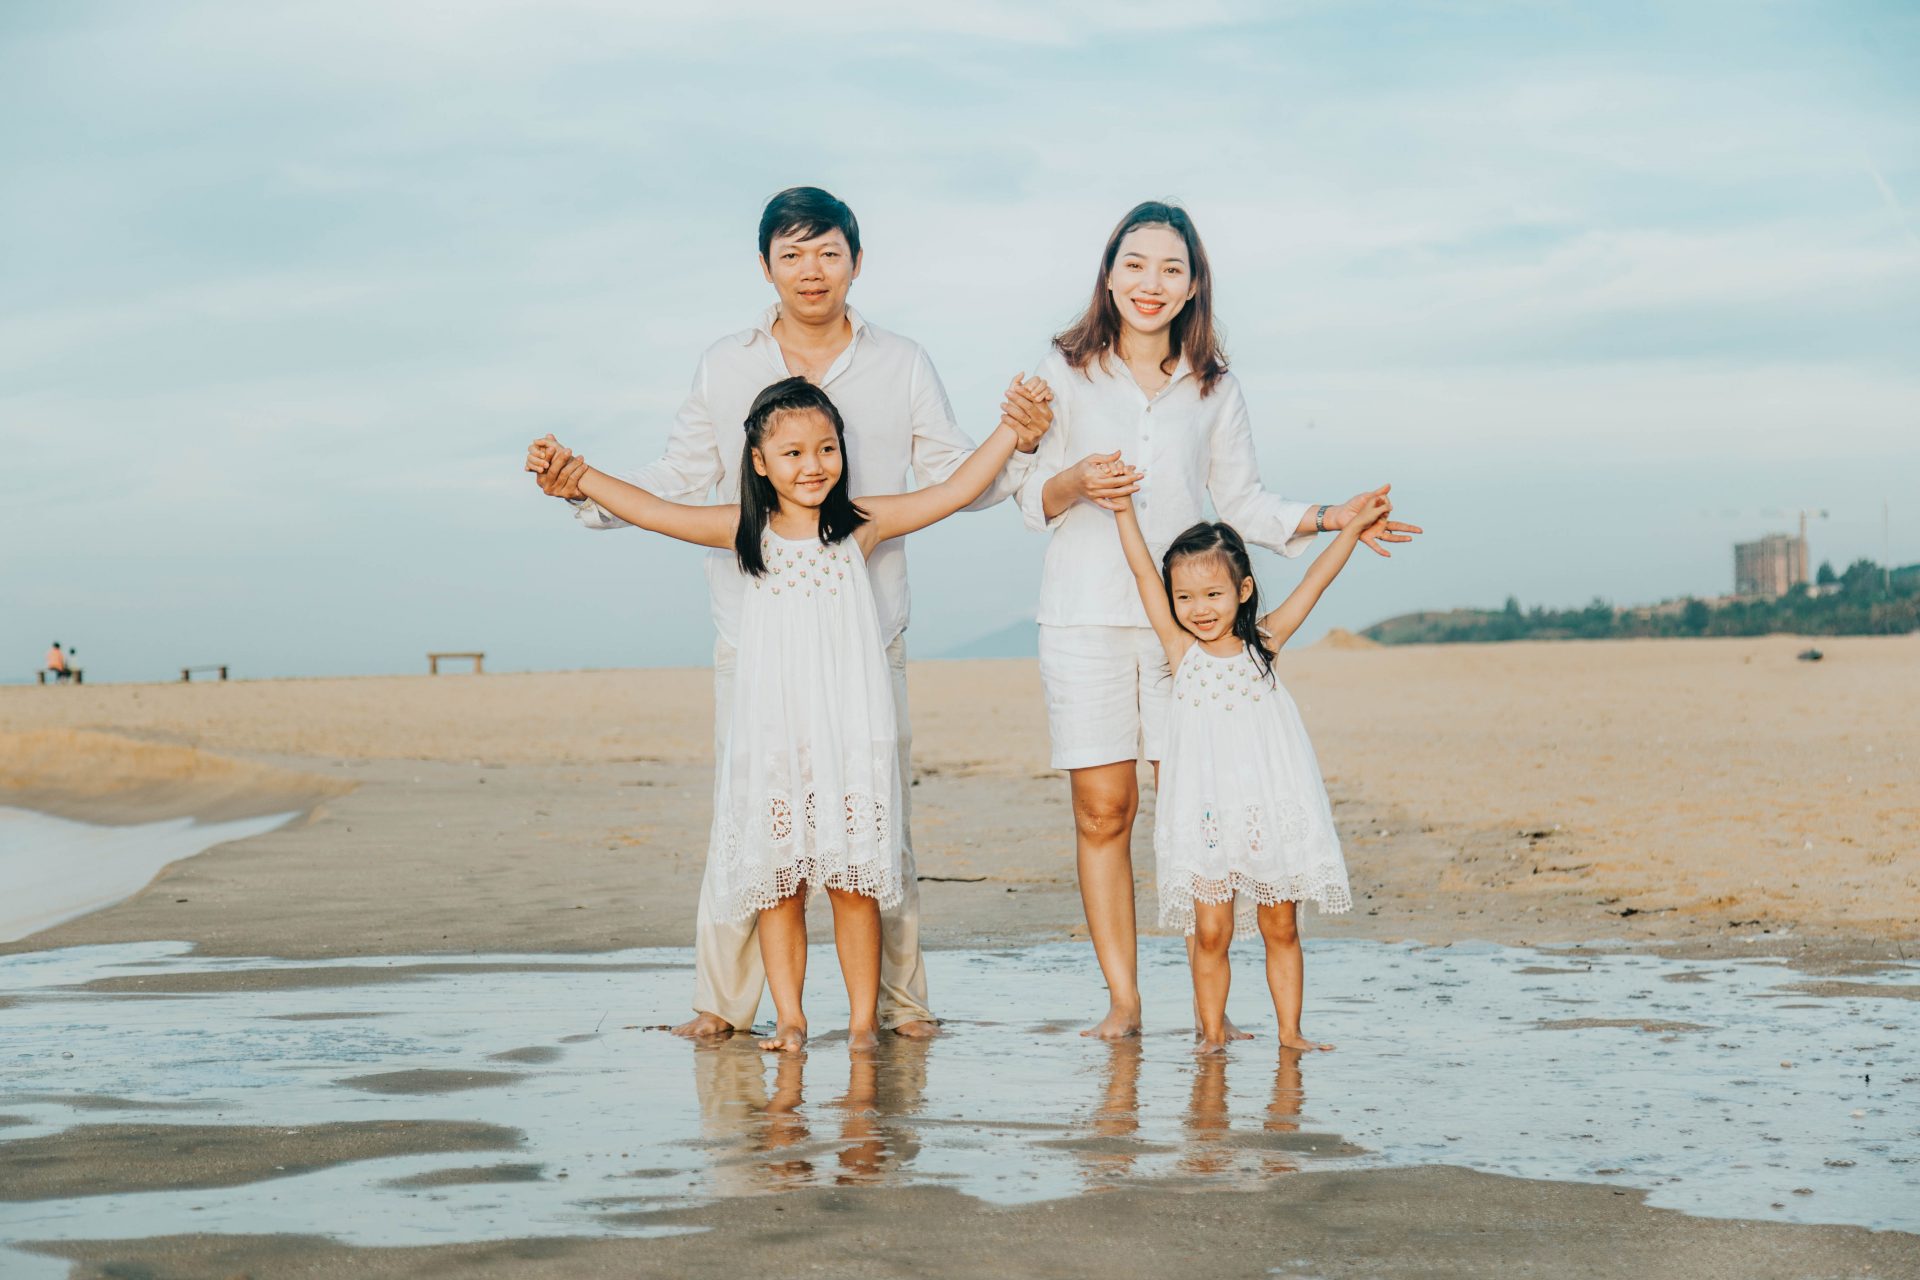 Một tấm ảnh gia đình yêu thương tại bãi biển là kỷ niệm đáng trân trọng. Hãy cùng chiêm ngưỡng dáng vẻ hạnh phúc của gia đình trên bãi cát trắng tinh khiết, sóng vỗ nhẹ nhàng. Những khoảnh khắc này sẽ làm cho trái tim bạn tràn đầy niềm vui và tình yêu thương.